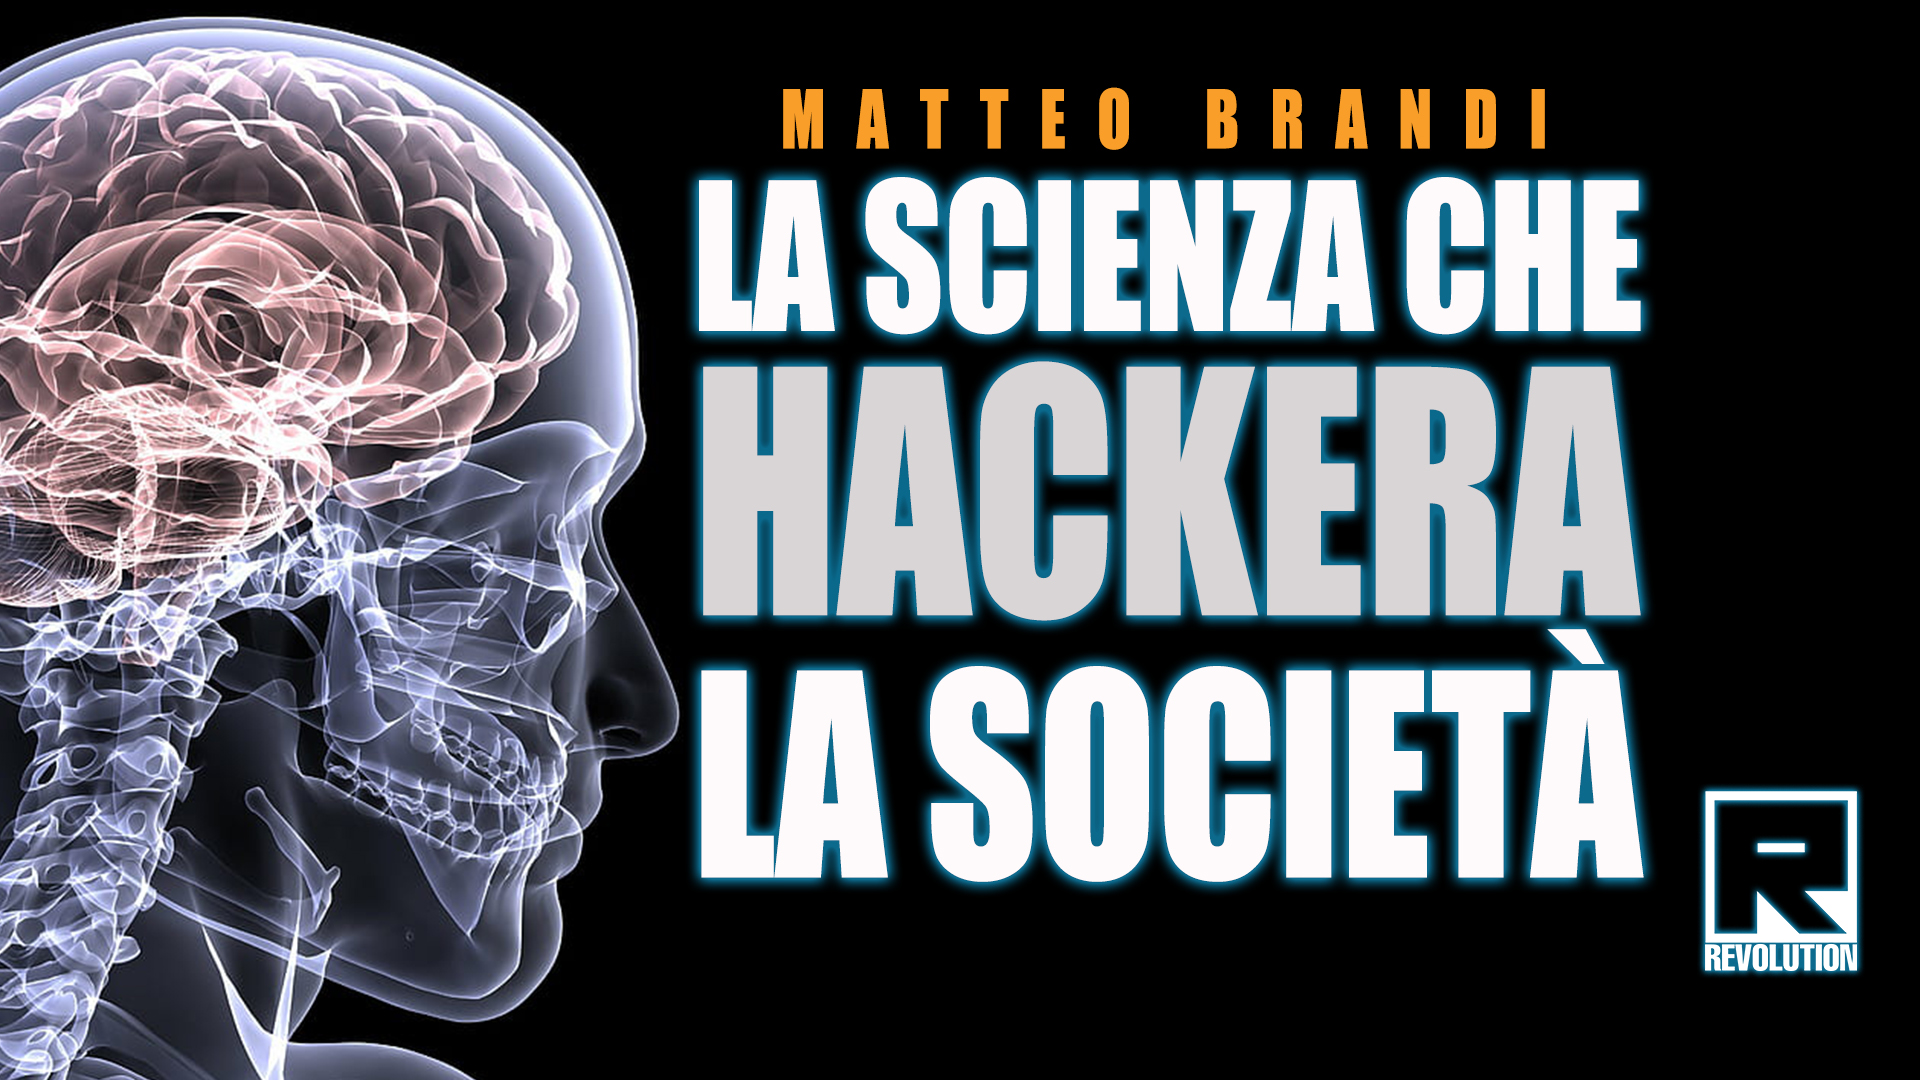 La scienza che “hackera” la società.